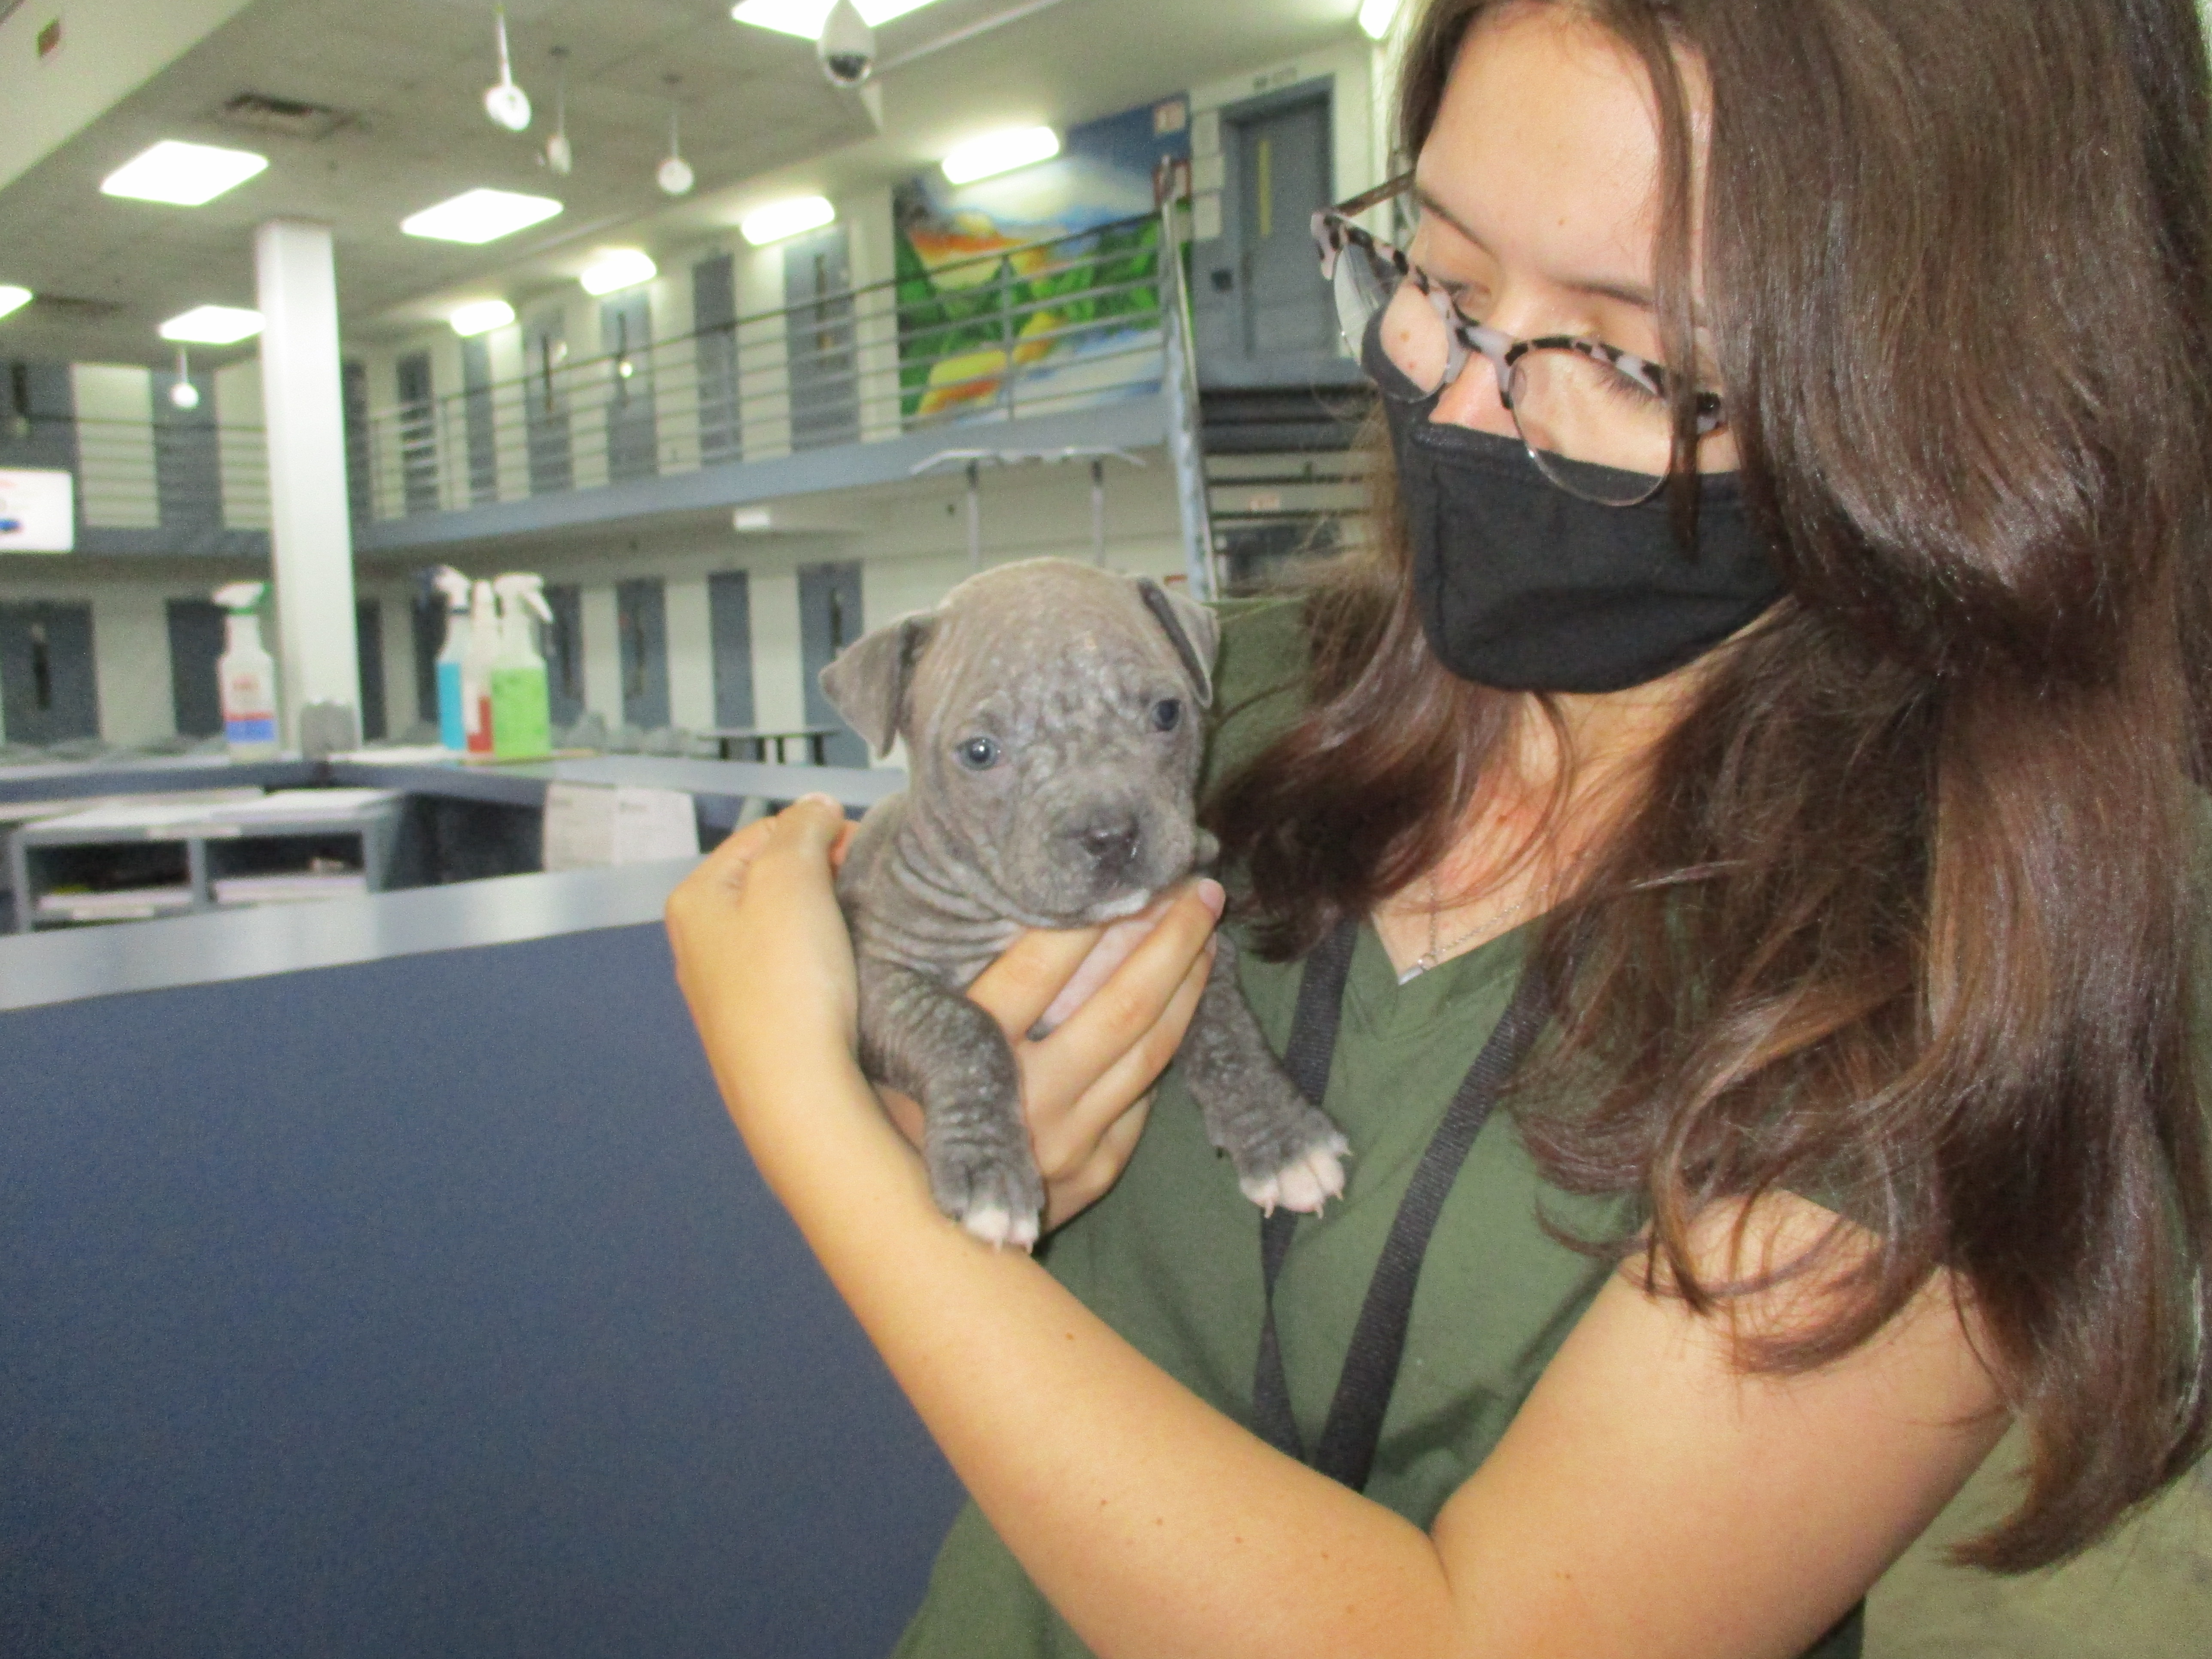 An intern holds a puppy